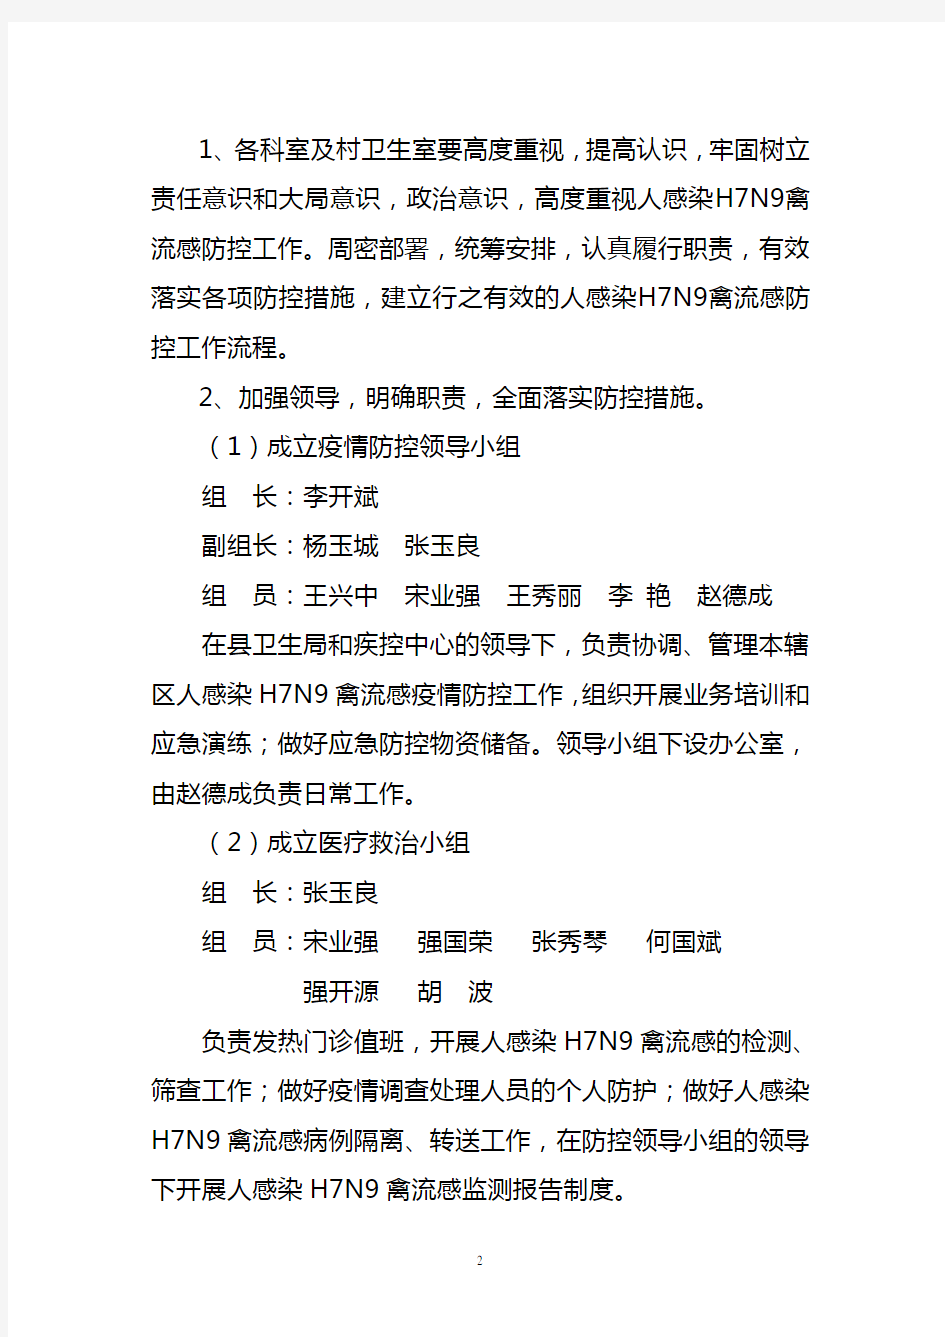 广坪镇人感染h7n9禽流感防控实施方案